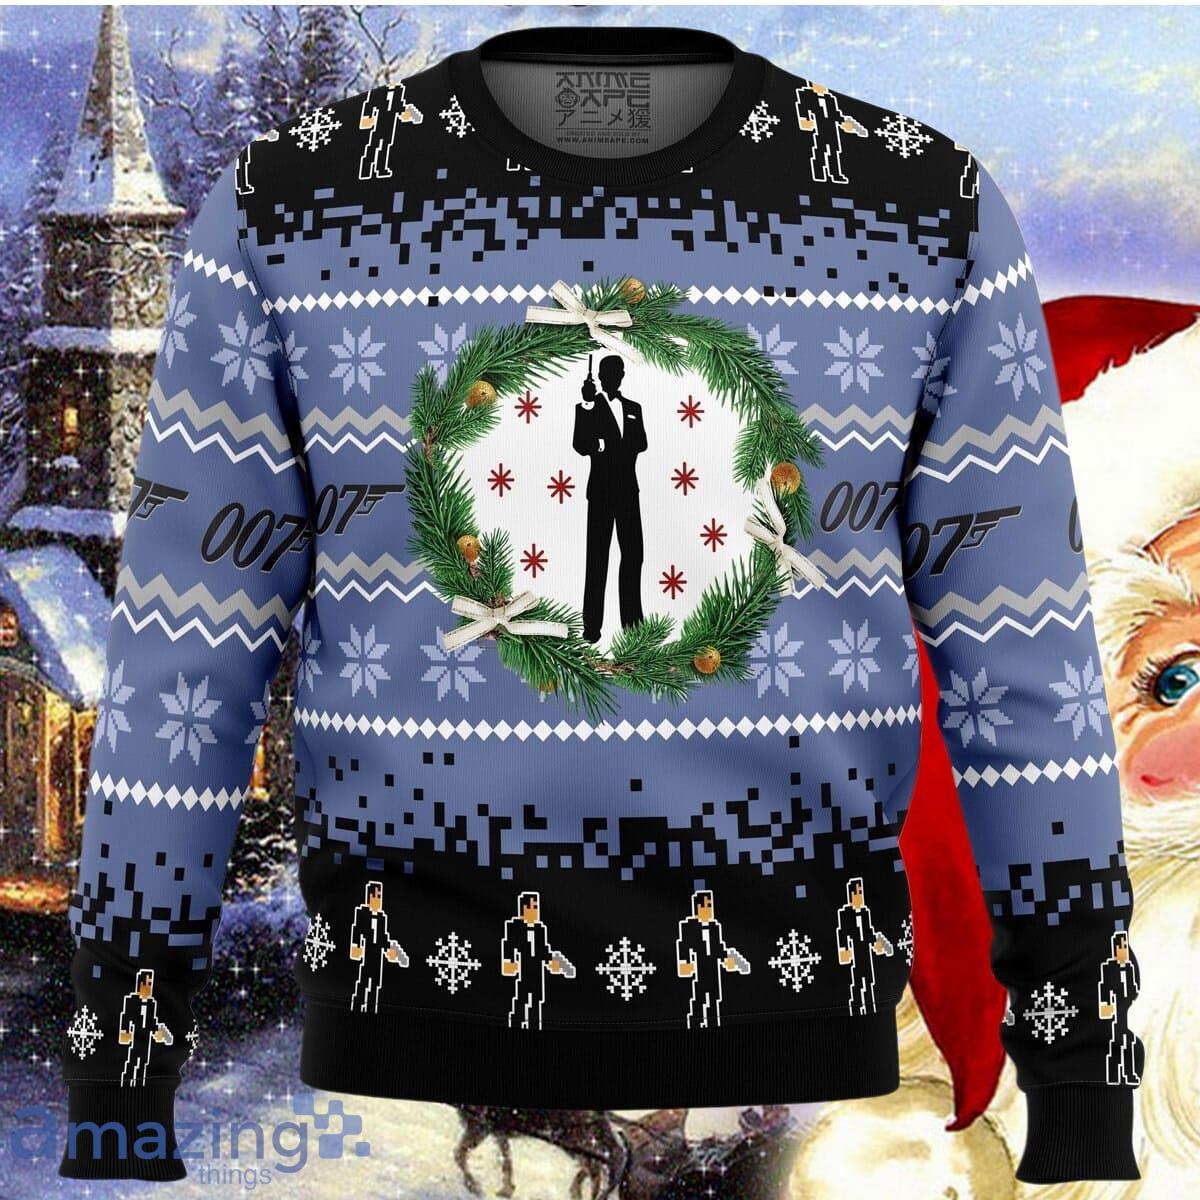 james-bond-ugly-christmas-sweater-impressive-gift-for-men-and-women.jpg